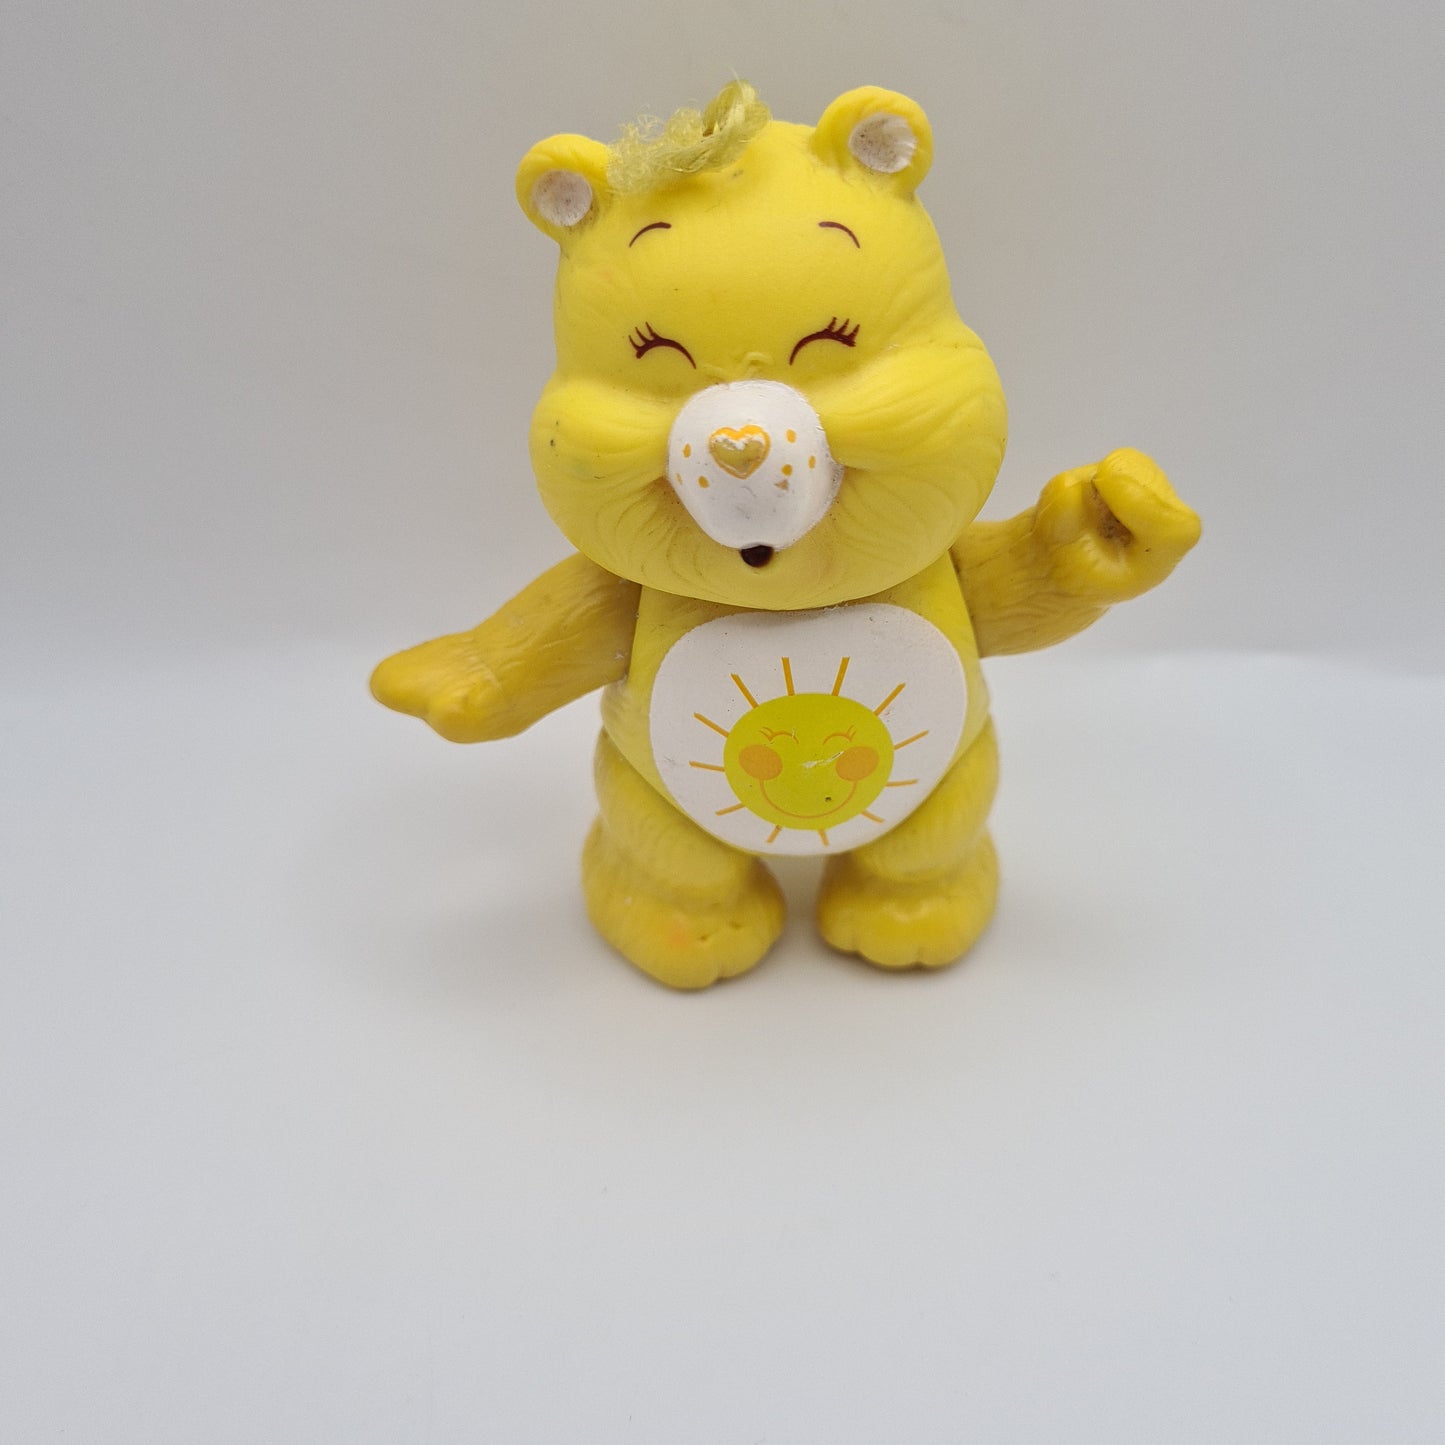 Care Bear 'Sunshine Bear' 80s 1983 Figure 1983